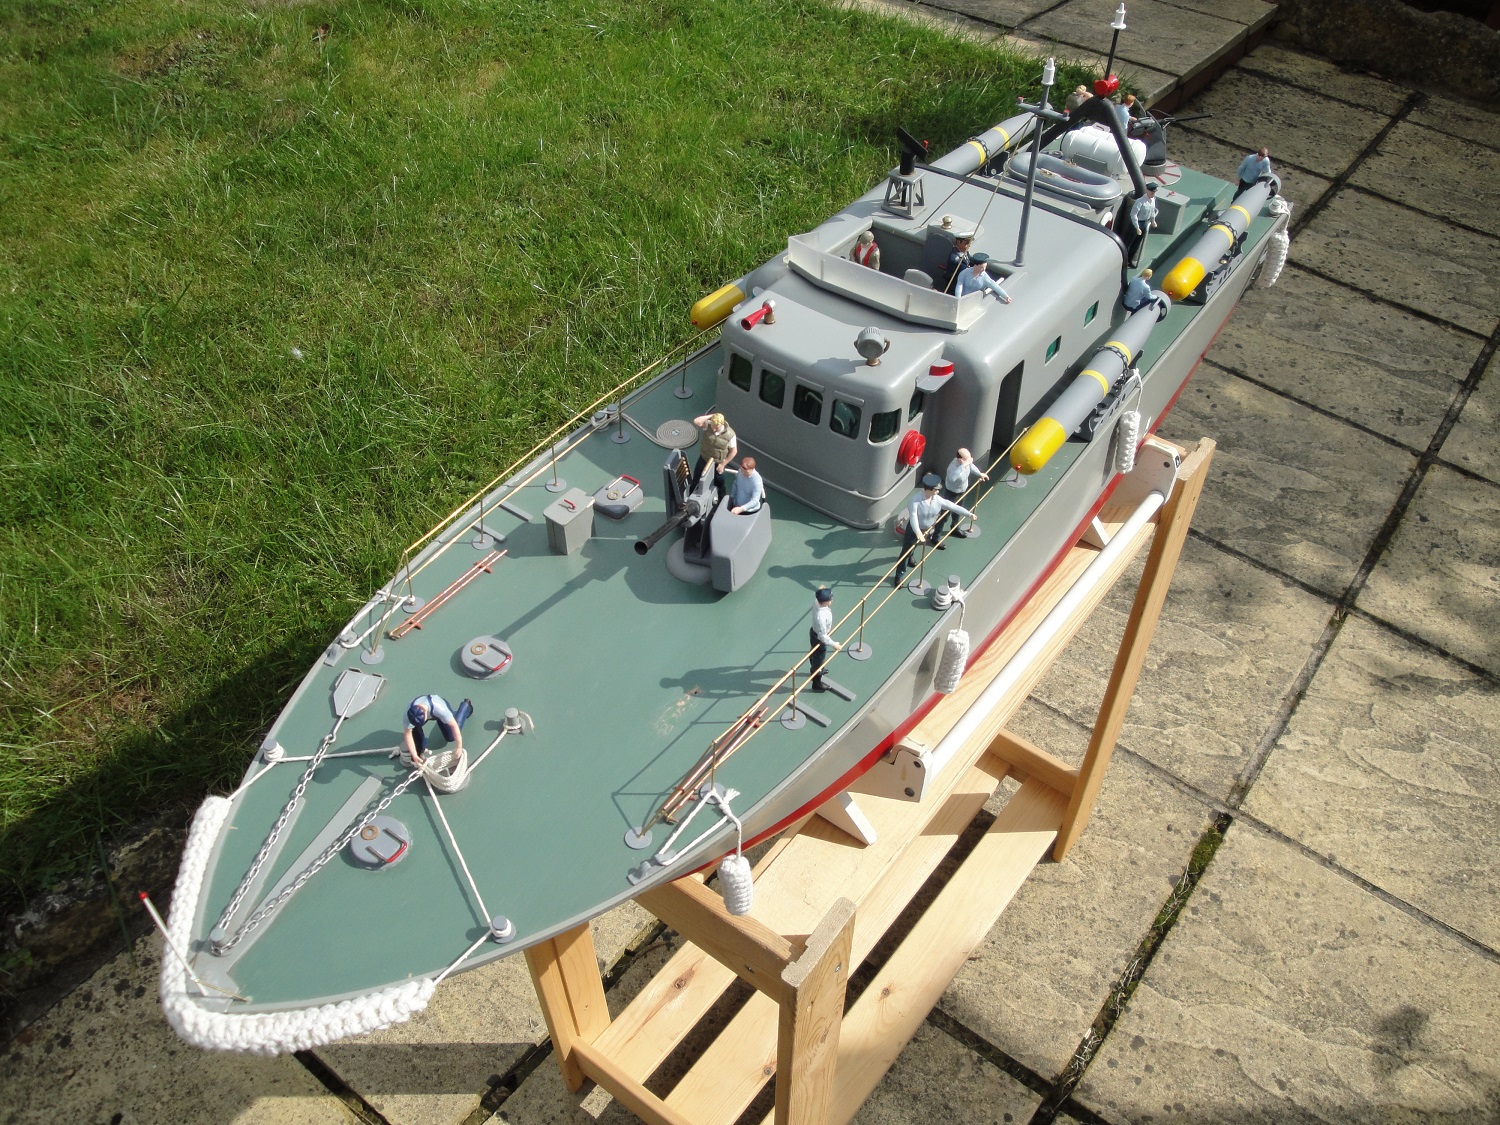 Model Boat Parts